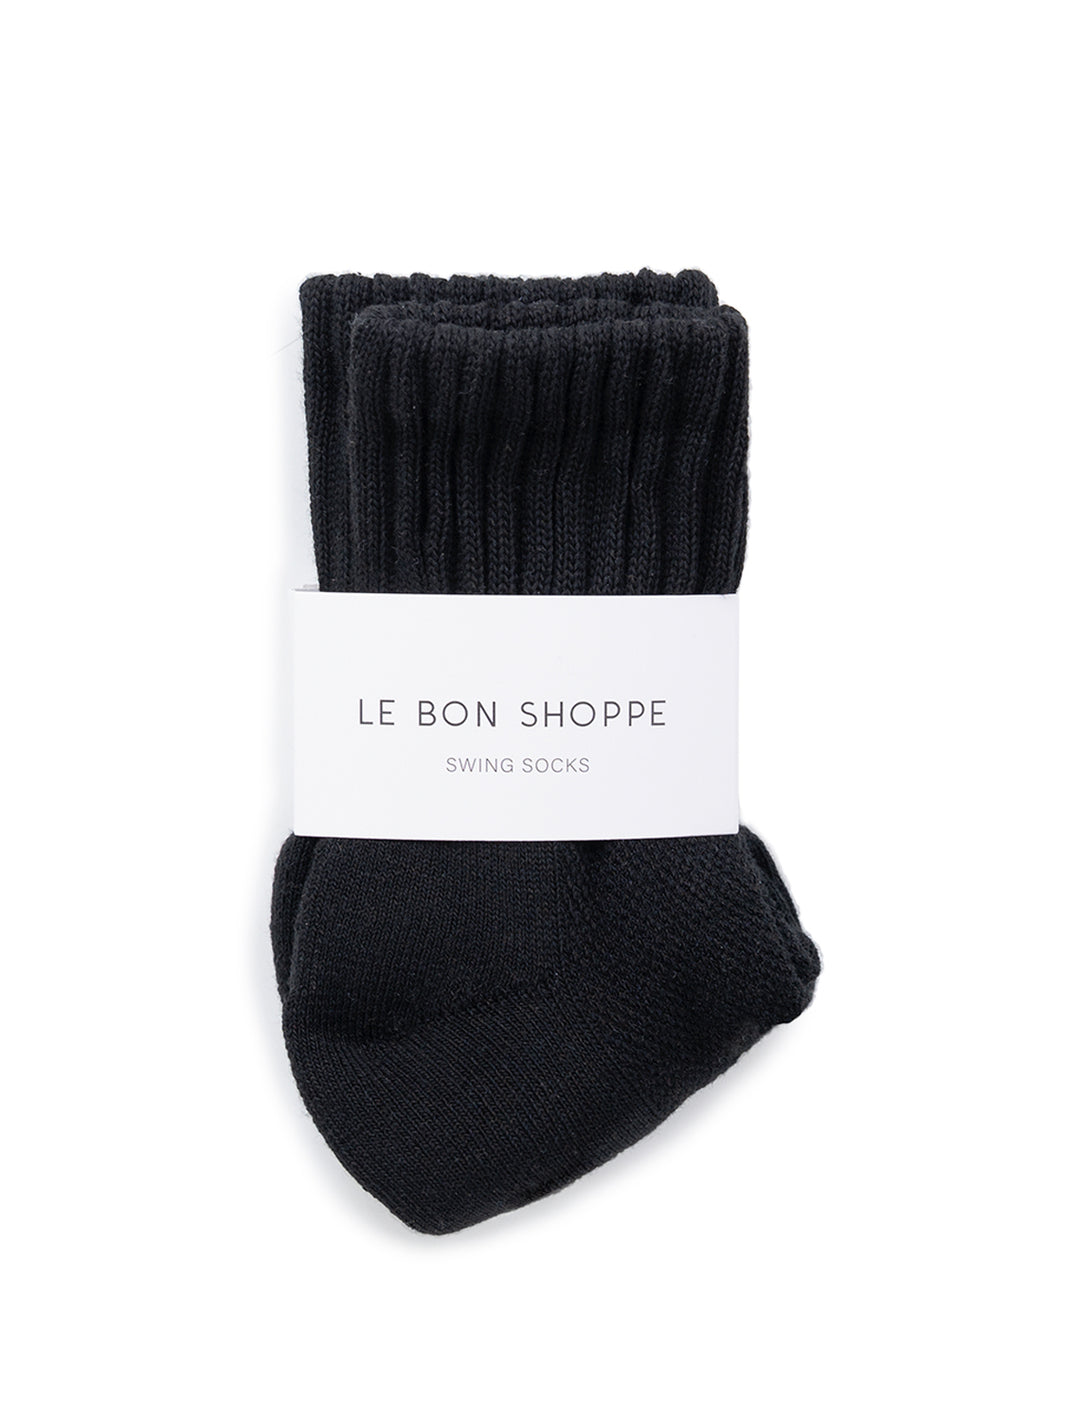 Front view of Le Bon Shoppe's swing socks in black.